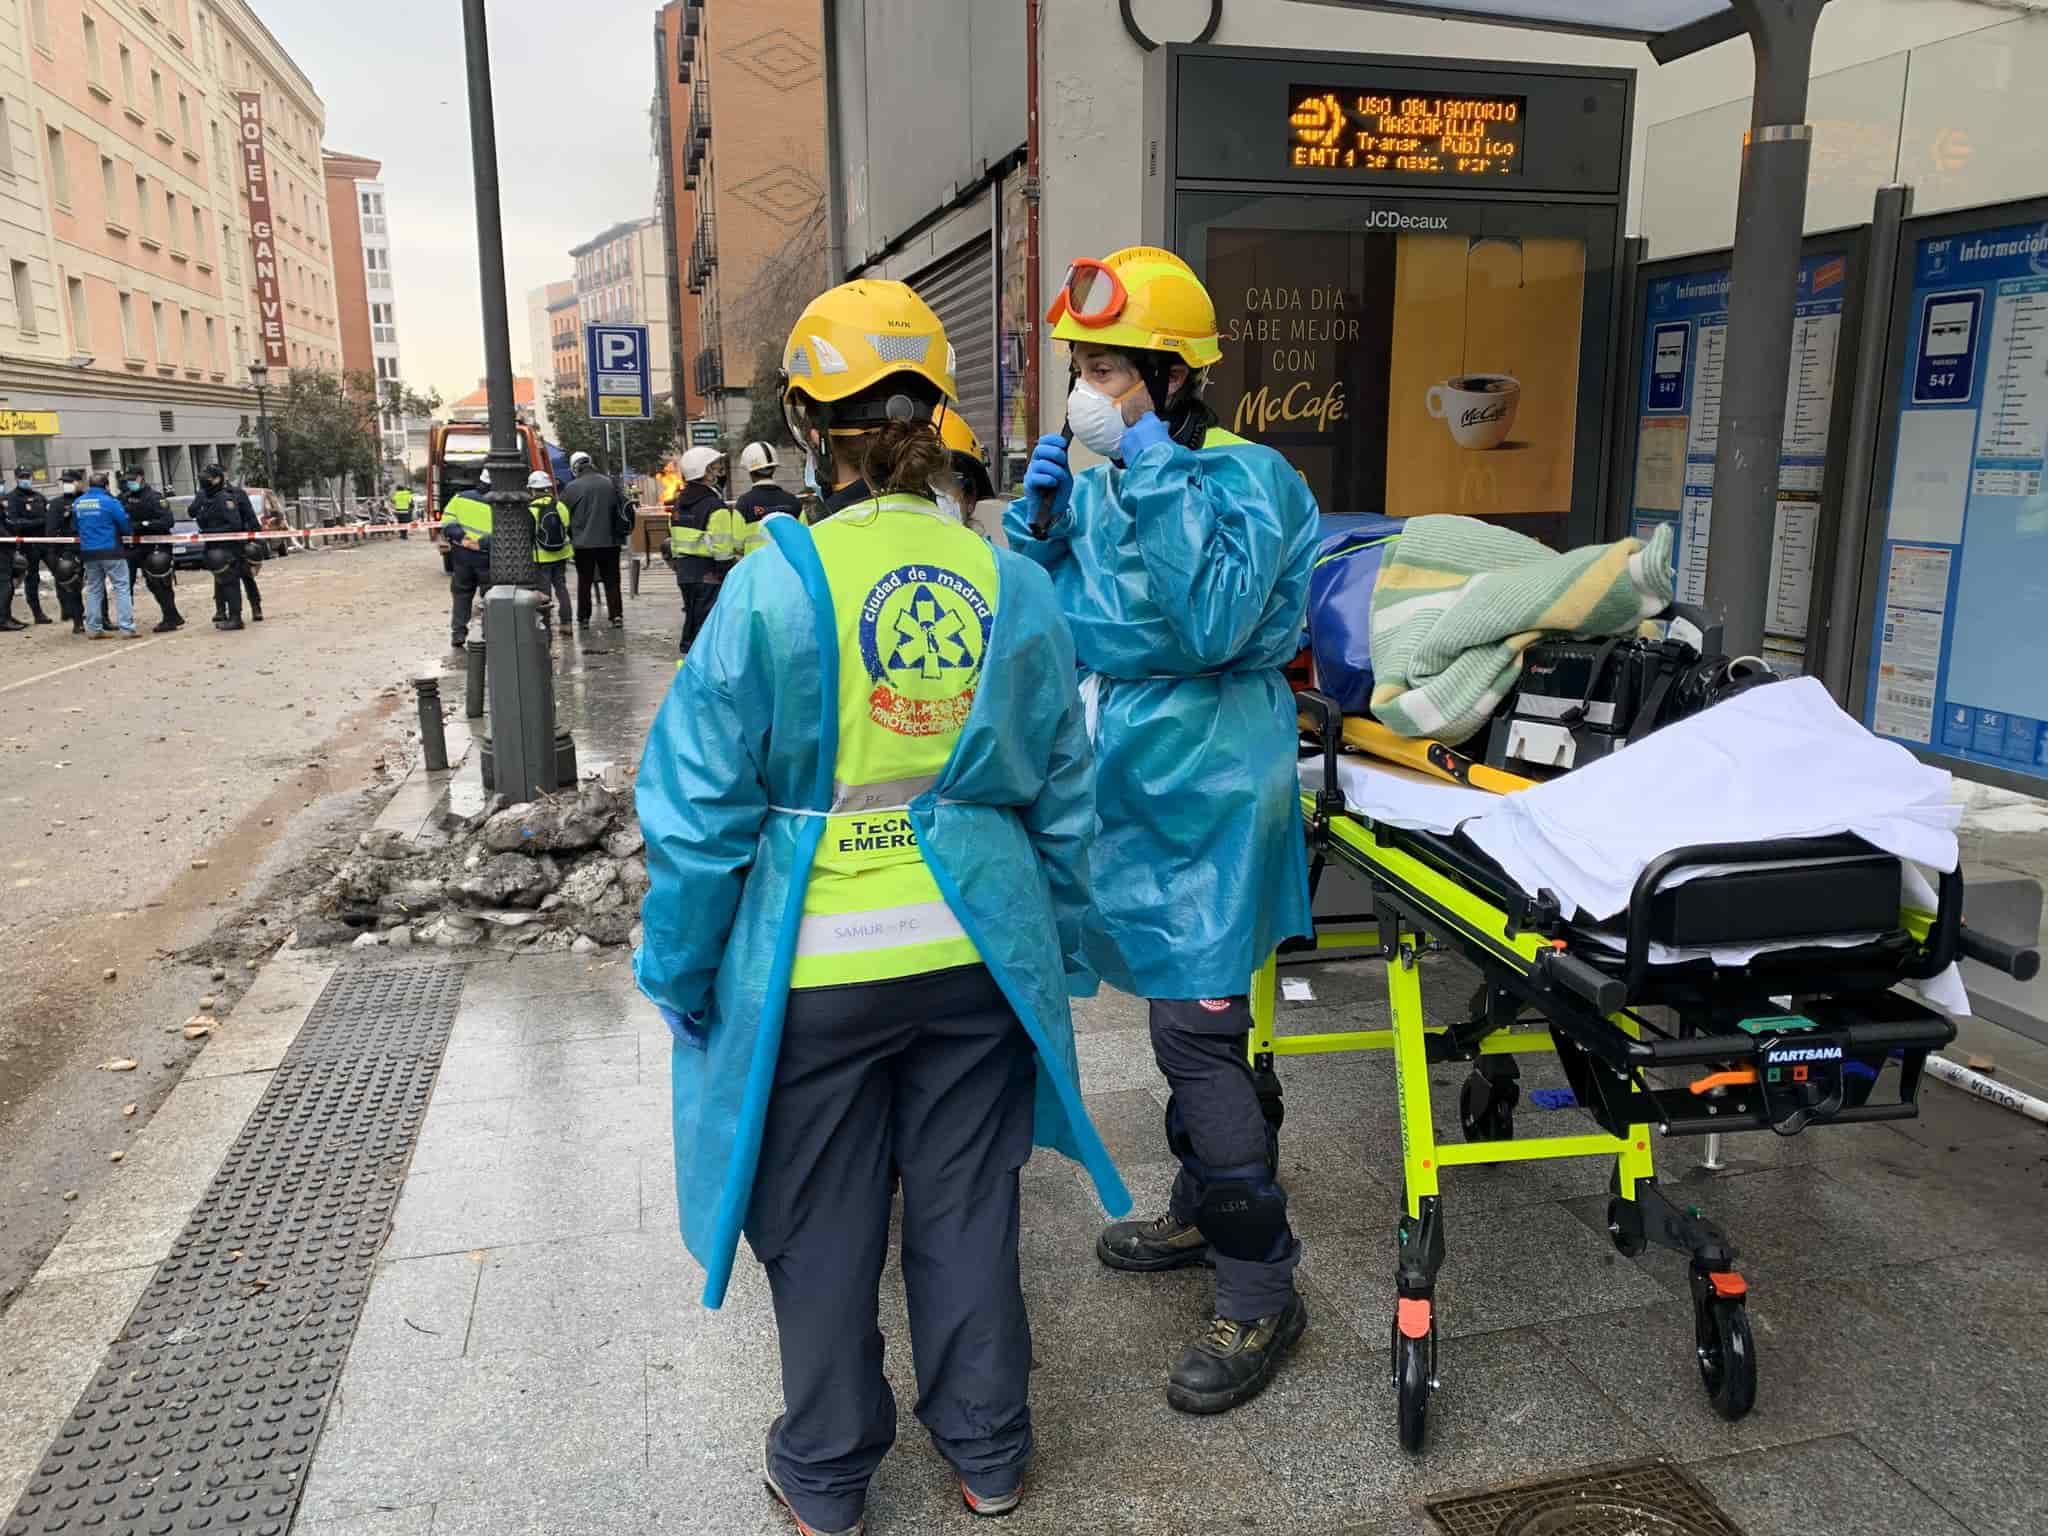 Fuerte explosión en Madrid, al menos tres fallecidos, 1 desaparecida y más de 11 heridos